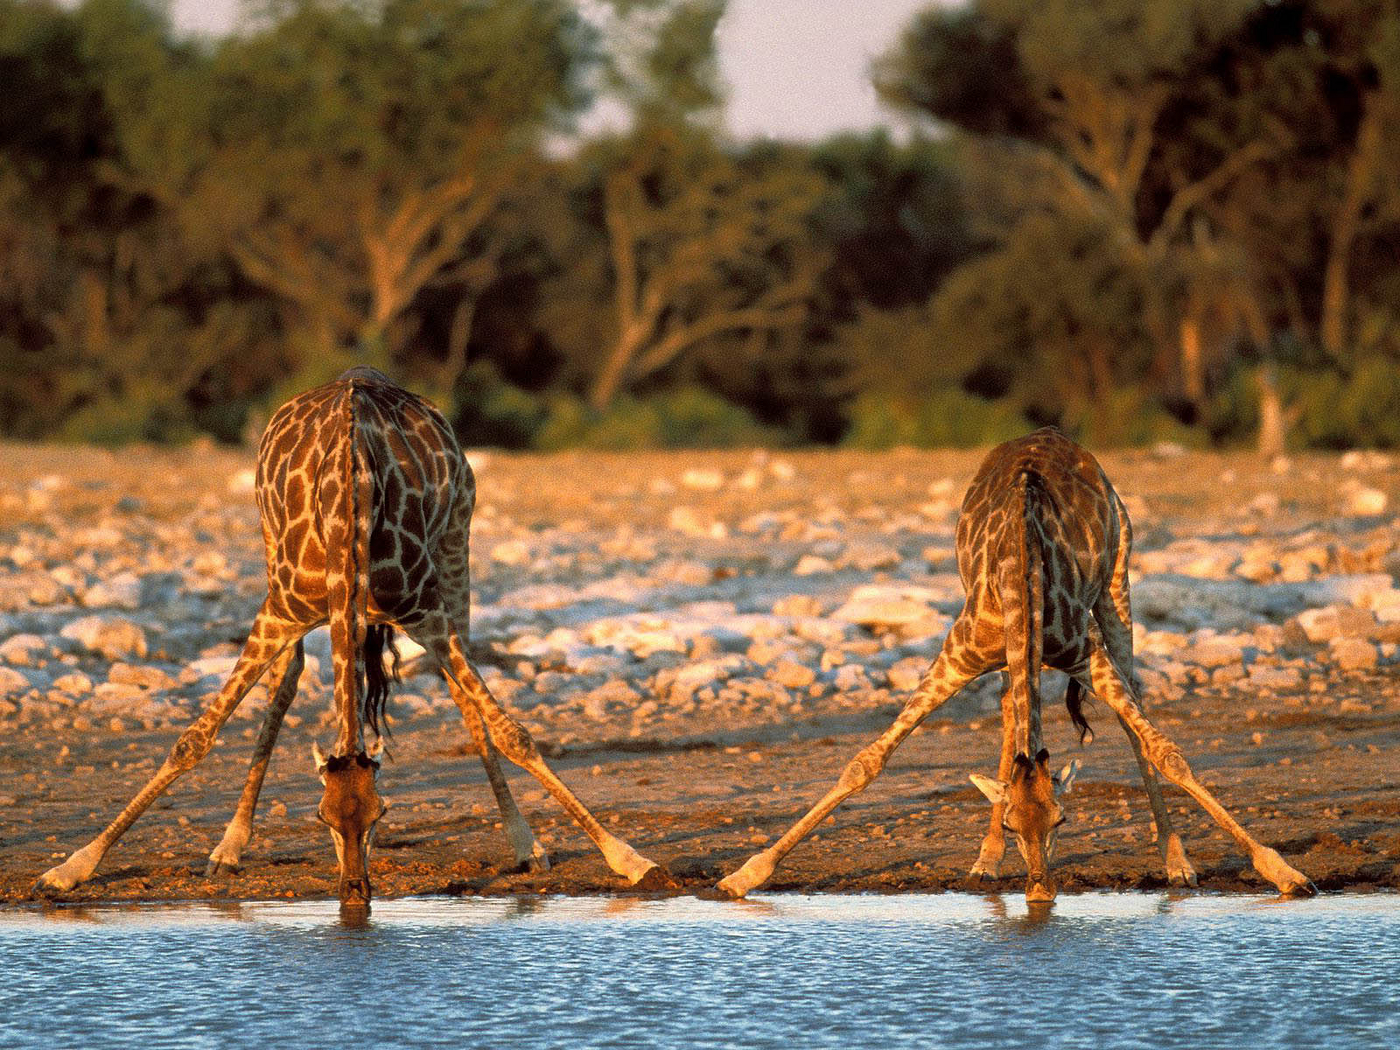 1080p Giraffes Hd Images